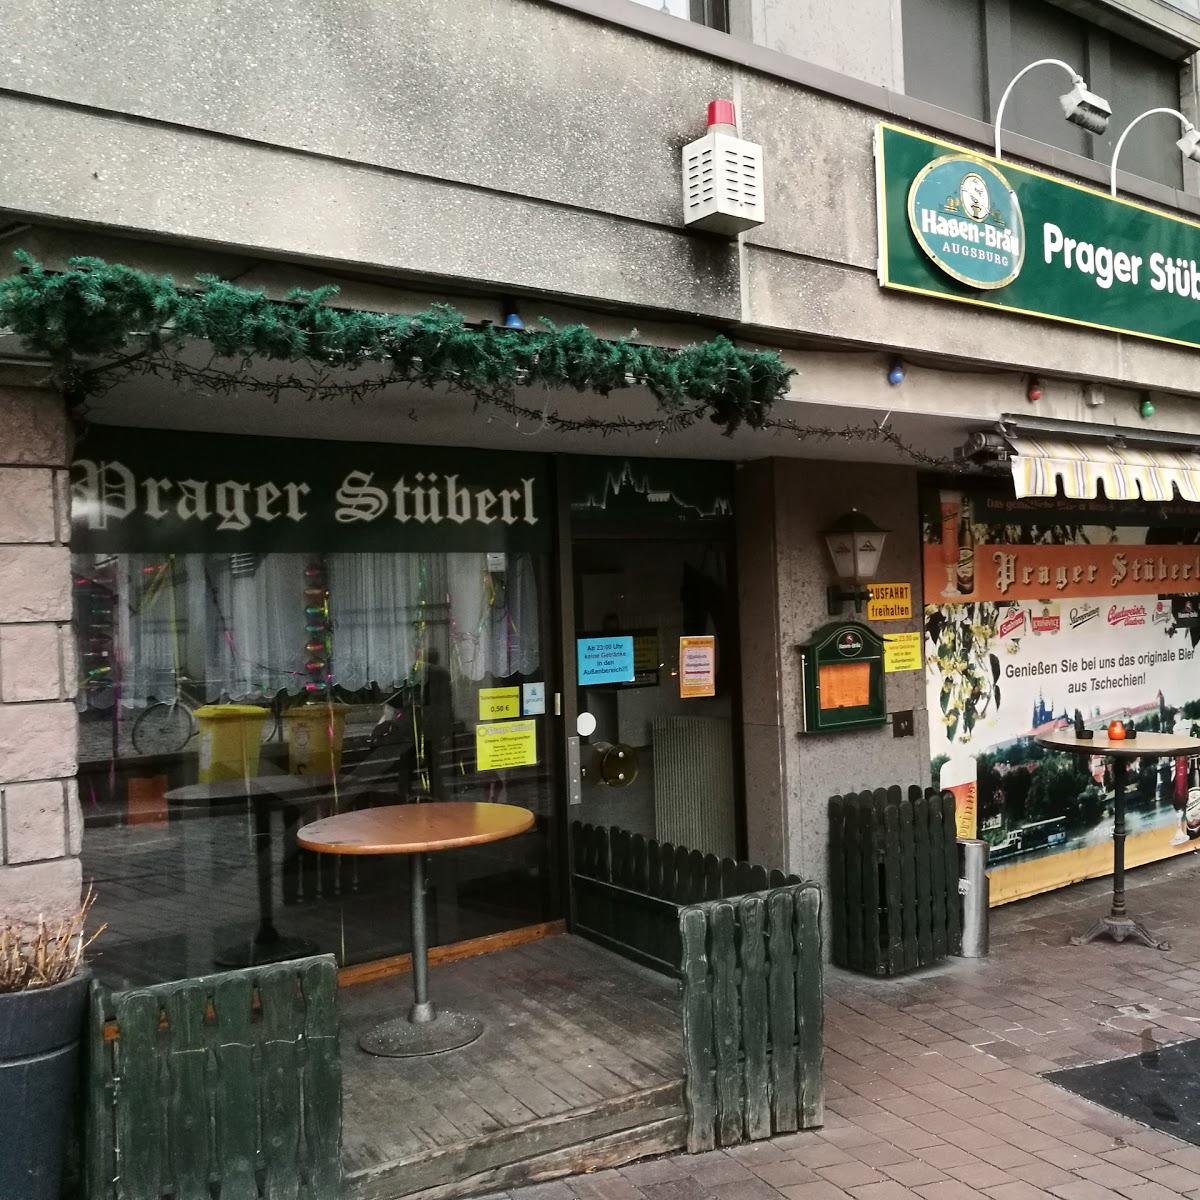 Restaurant "Prager Stüberl" in Augsburg